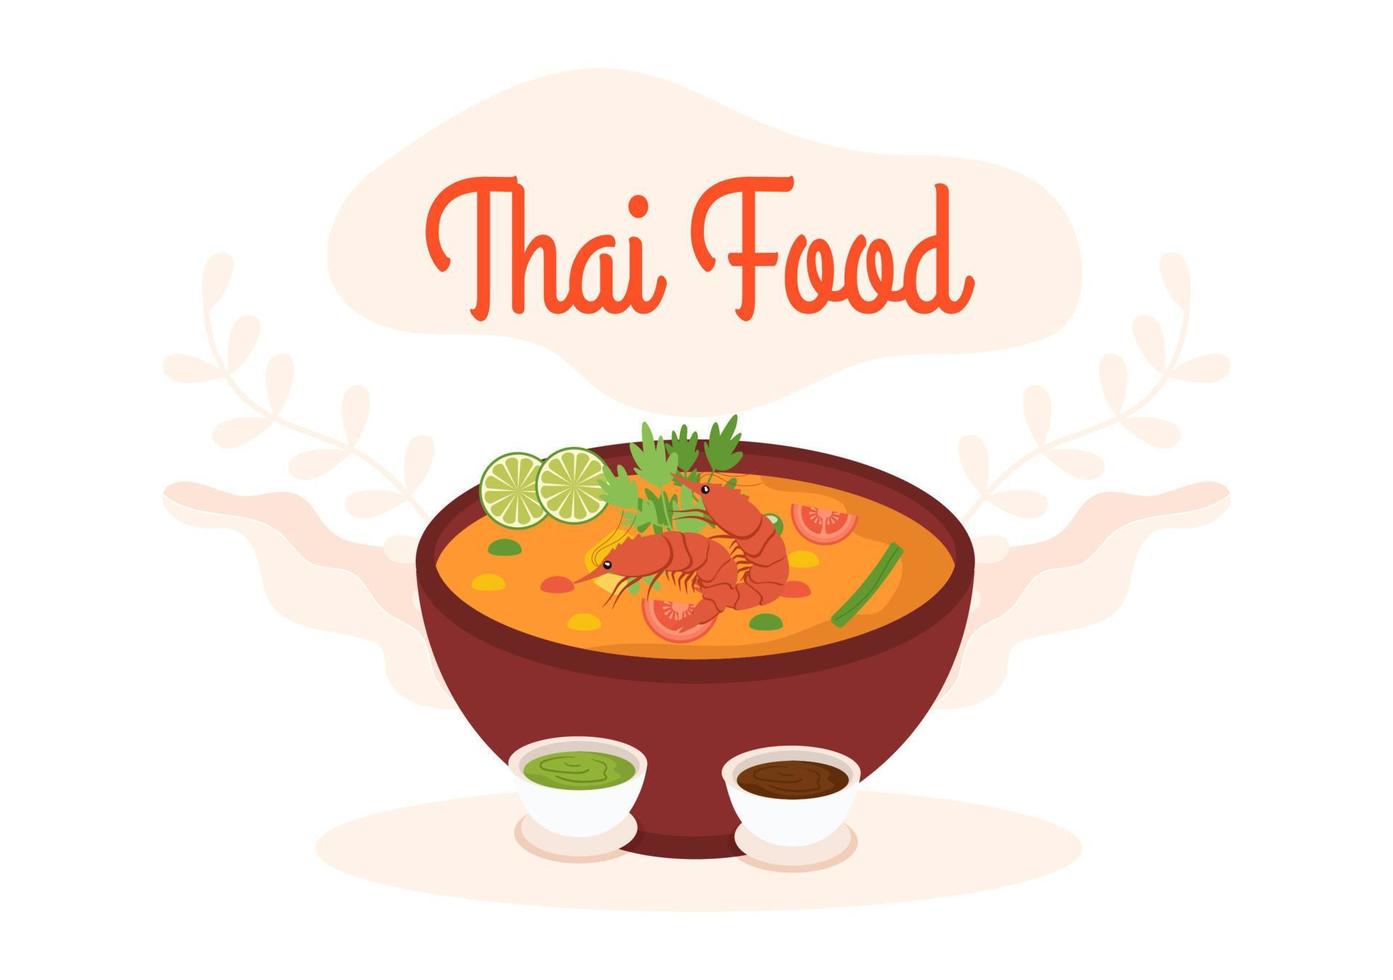 traditionelle thailändische lebensmittelvorlage cartoon handgezeichnete illustration verschiedene thailändische küche design vektor